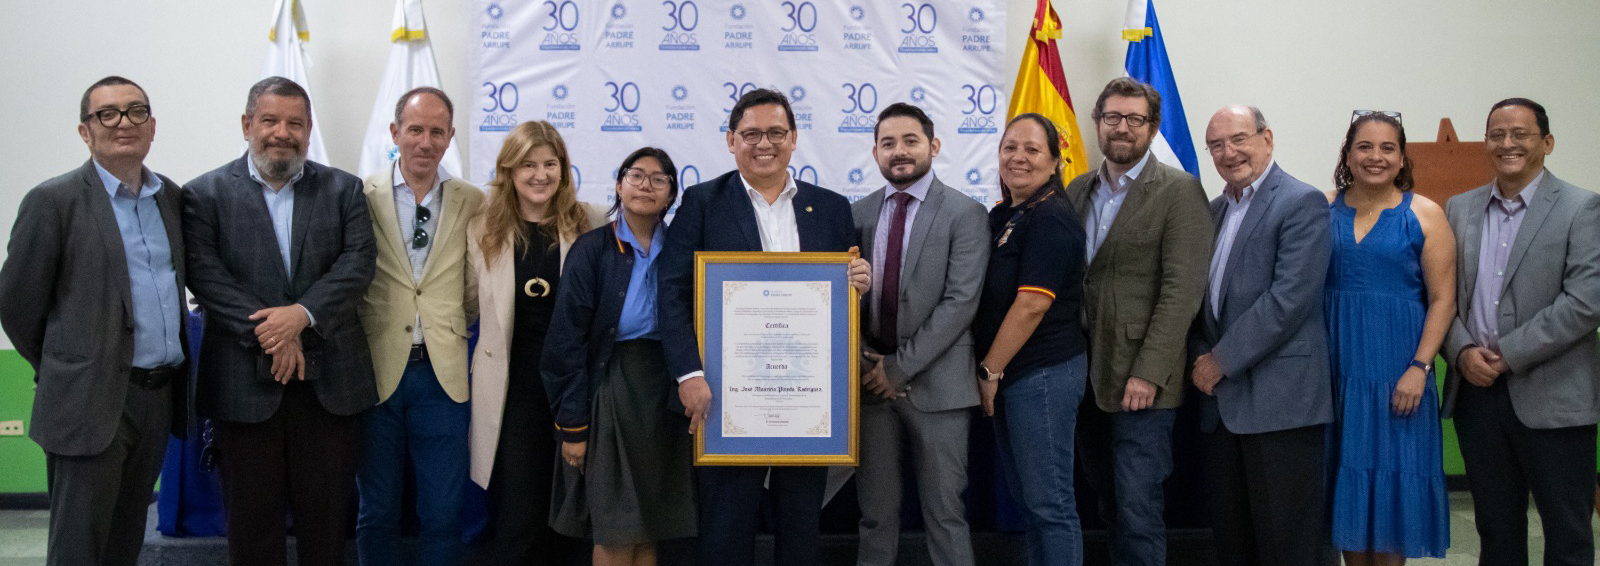 FUNIBER El Salvador reafirma su compromiso con la educación junto a la Fundación Padre Arrupe